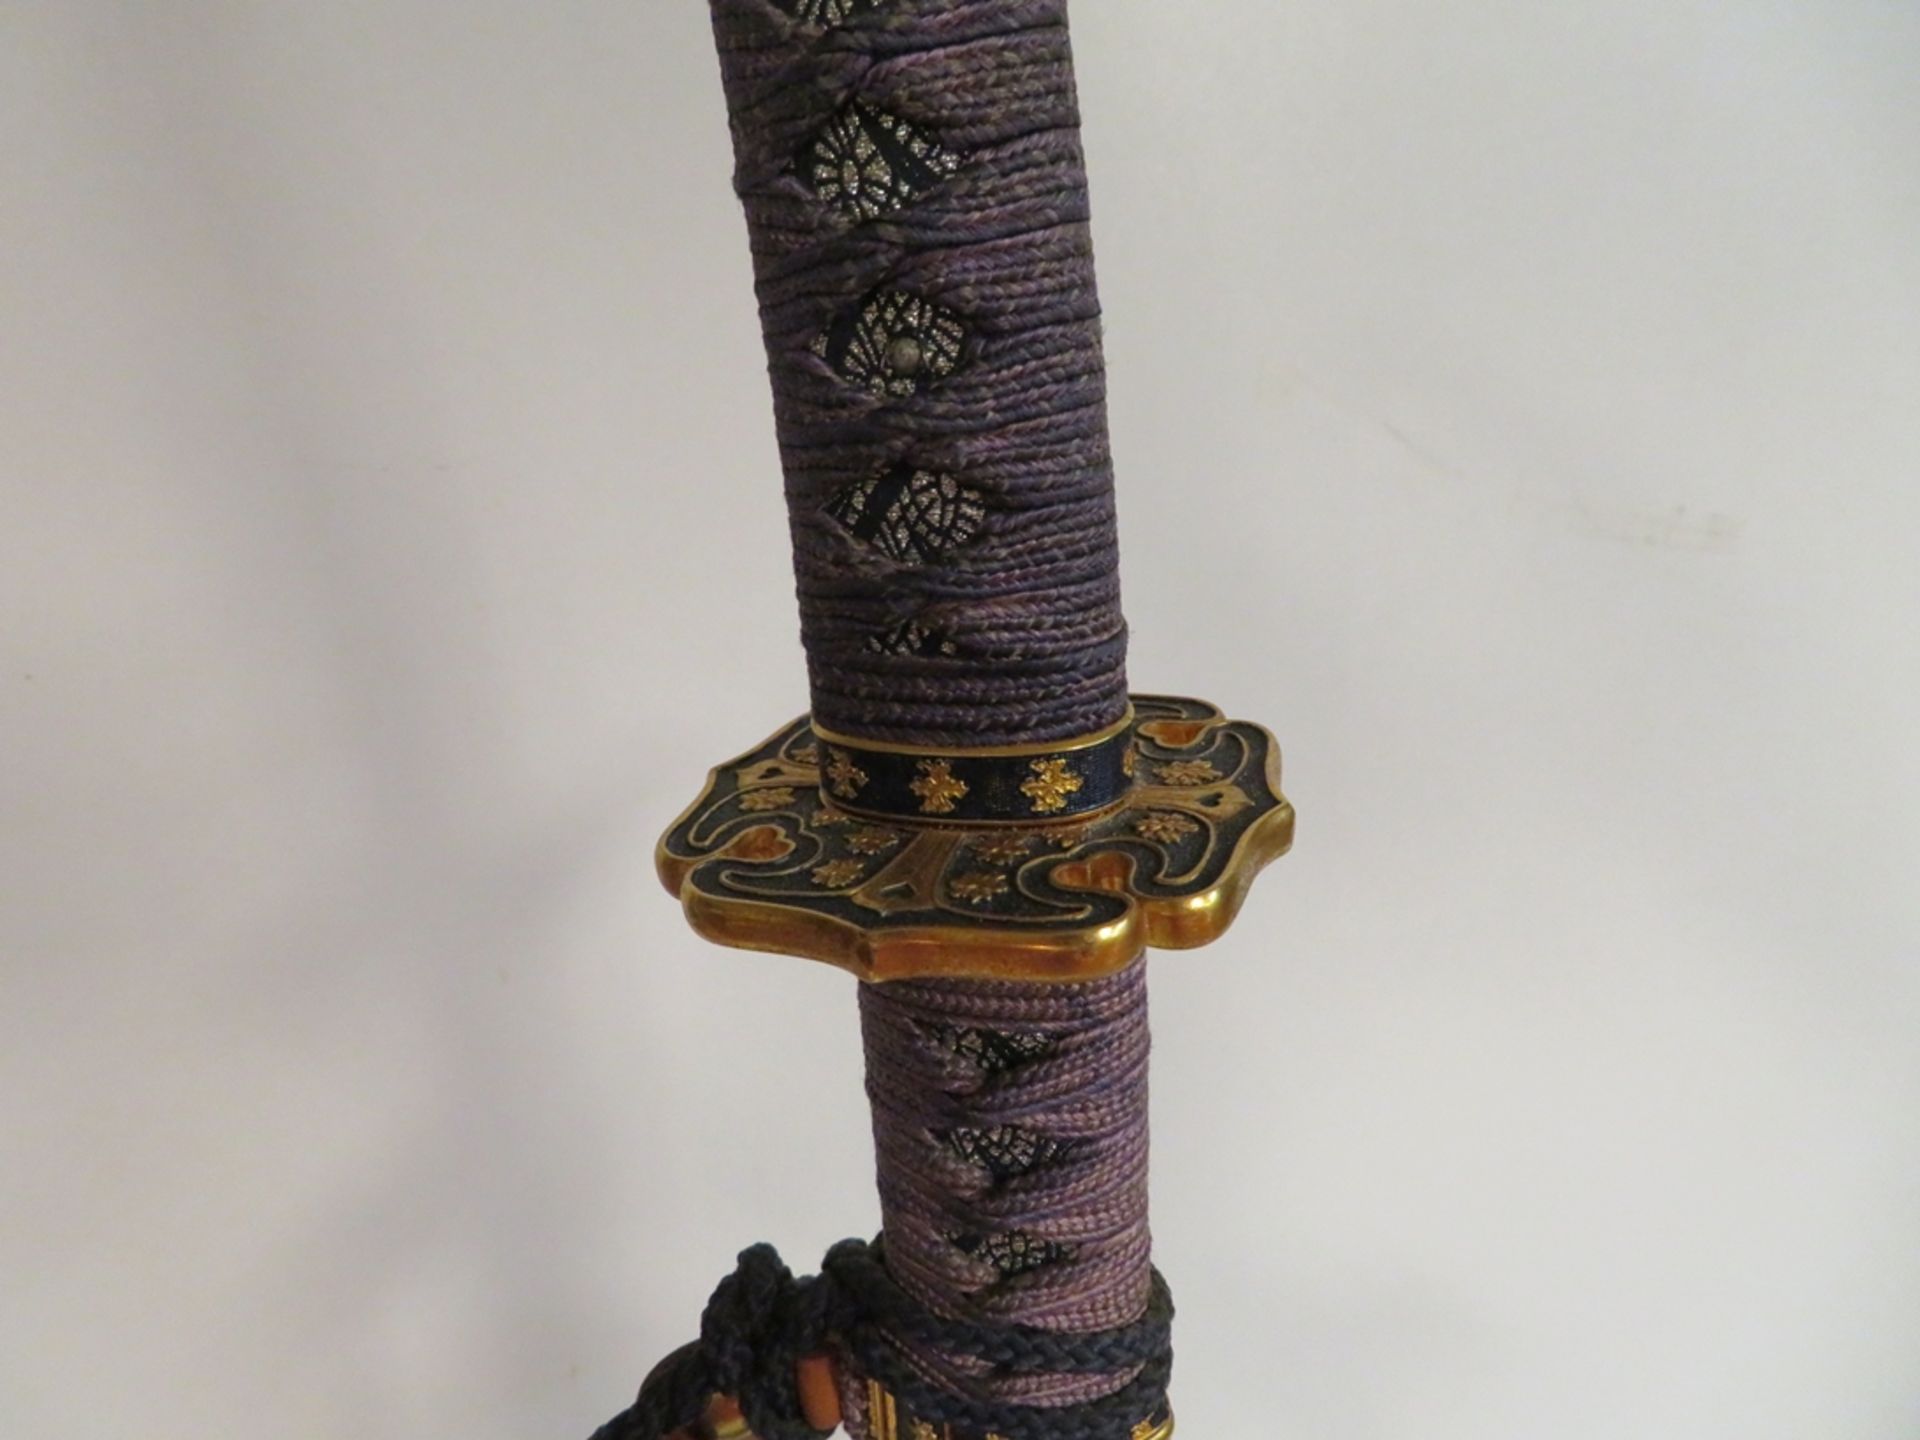 Samuraischwert in Holzständer, Modellwaffe, Japan, l 109 cm. - Bild 2 aus 2